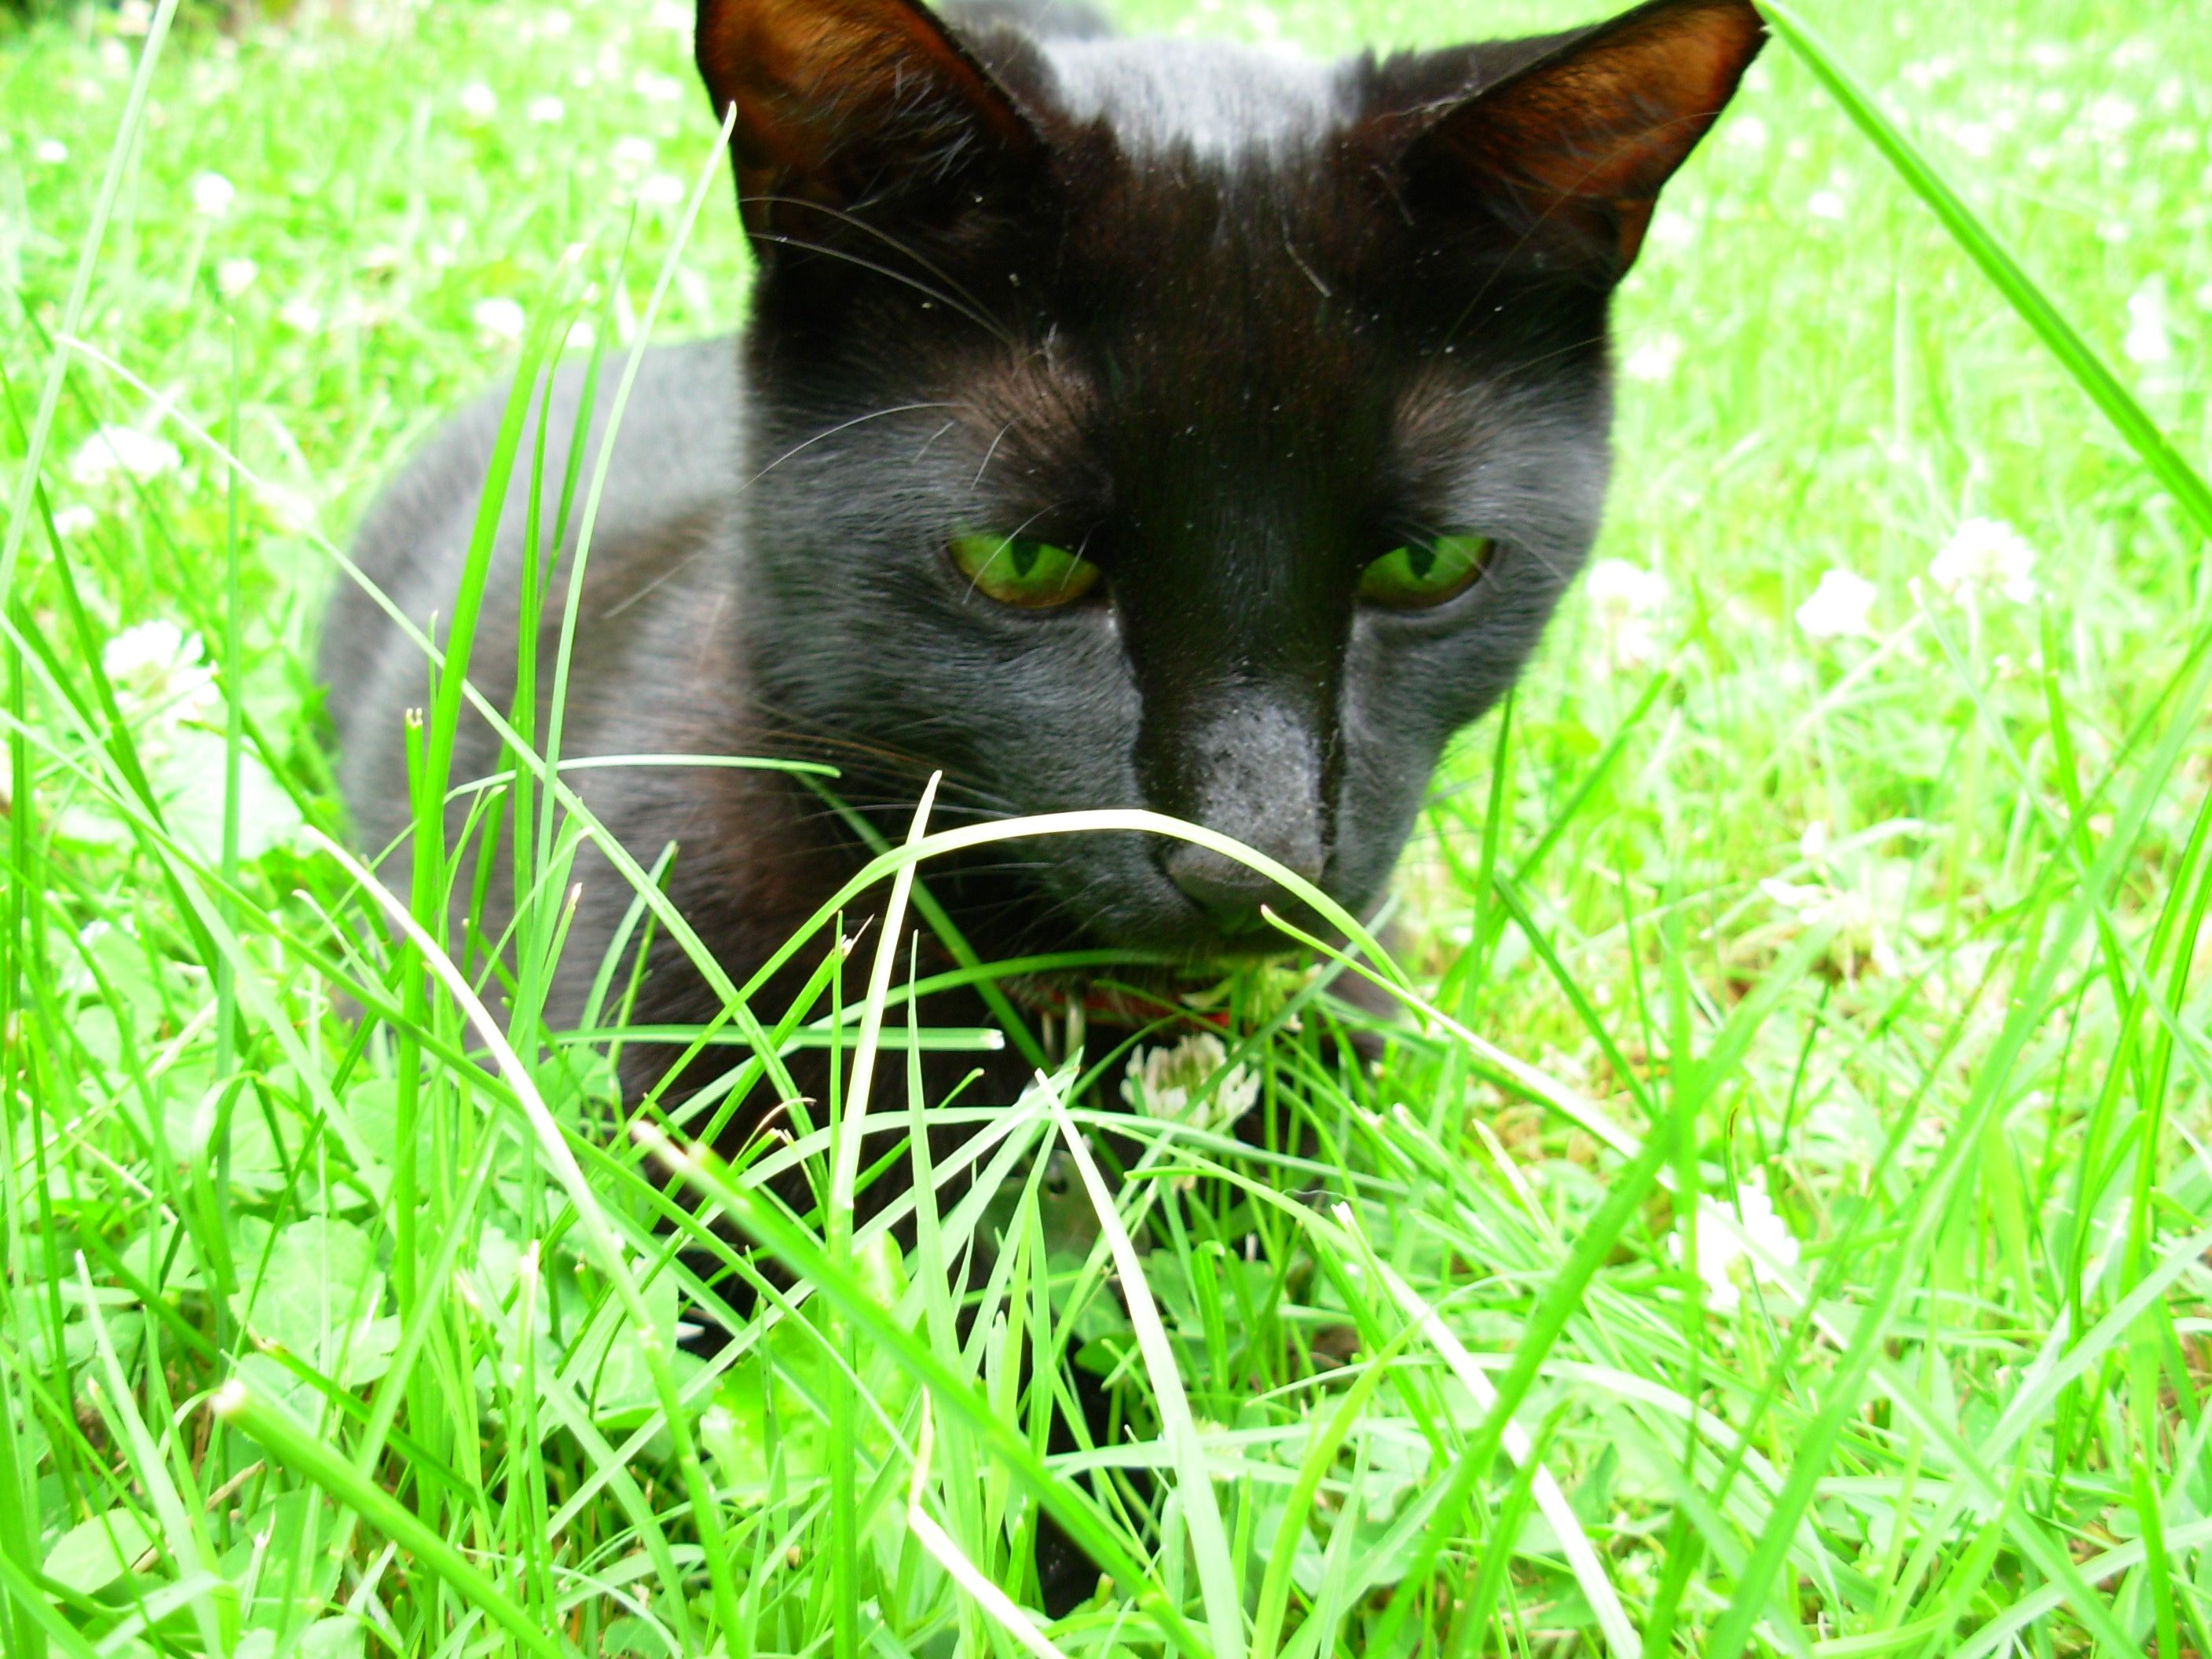 Premo staring into the grass.jpg